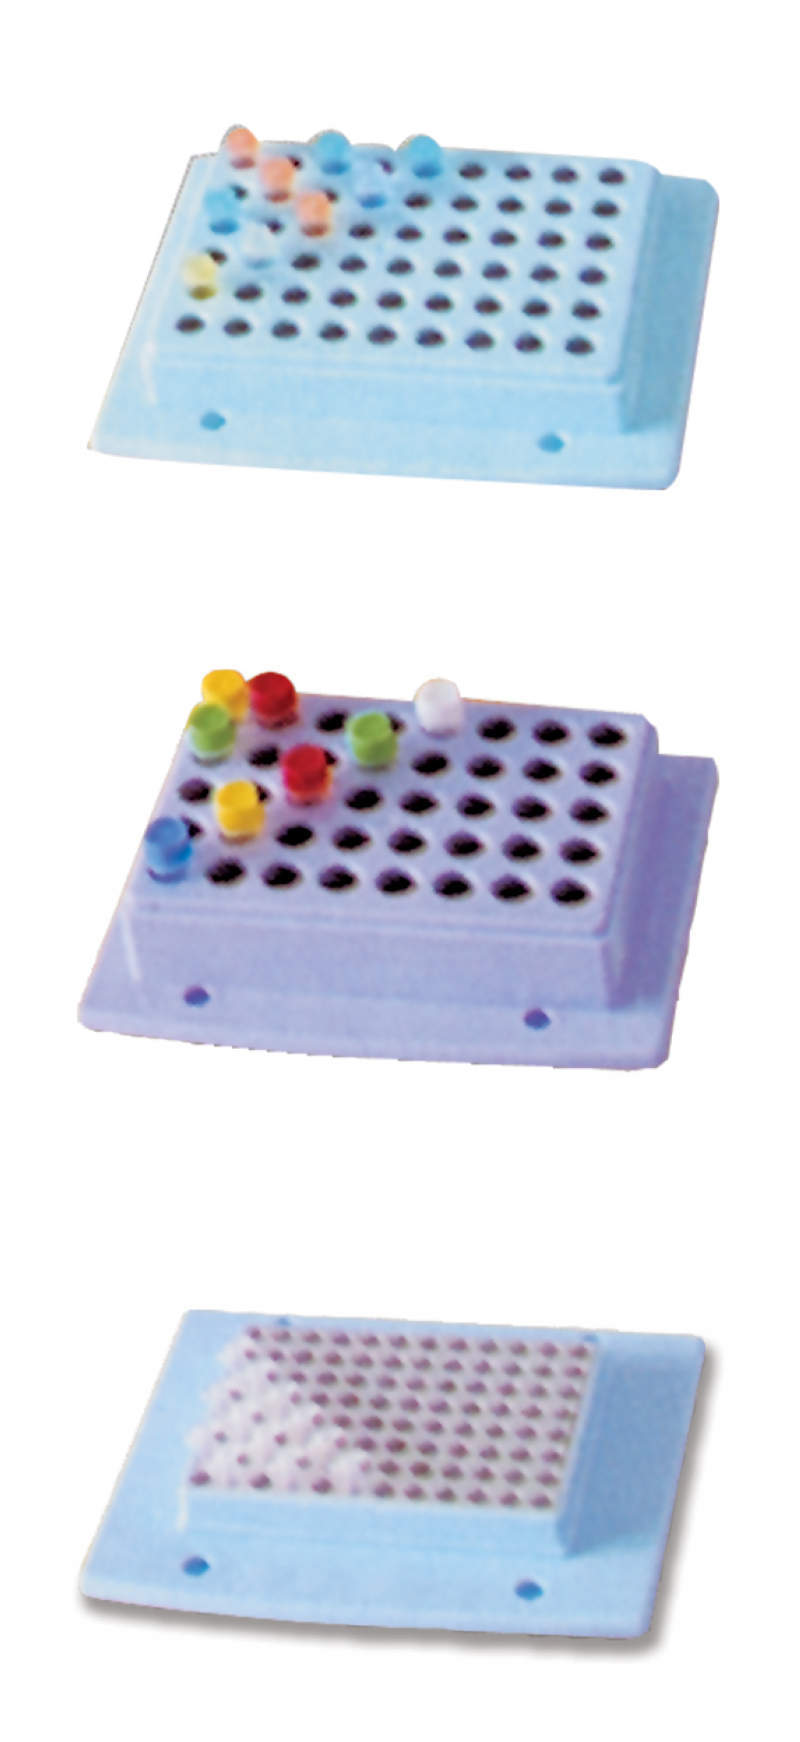 BLOQUE 96X0,2ML / PLACA 96 PCR - REF. 88876